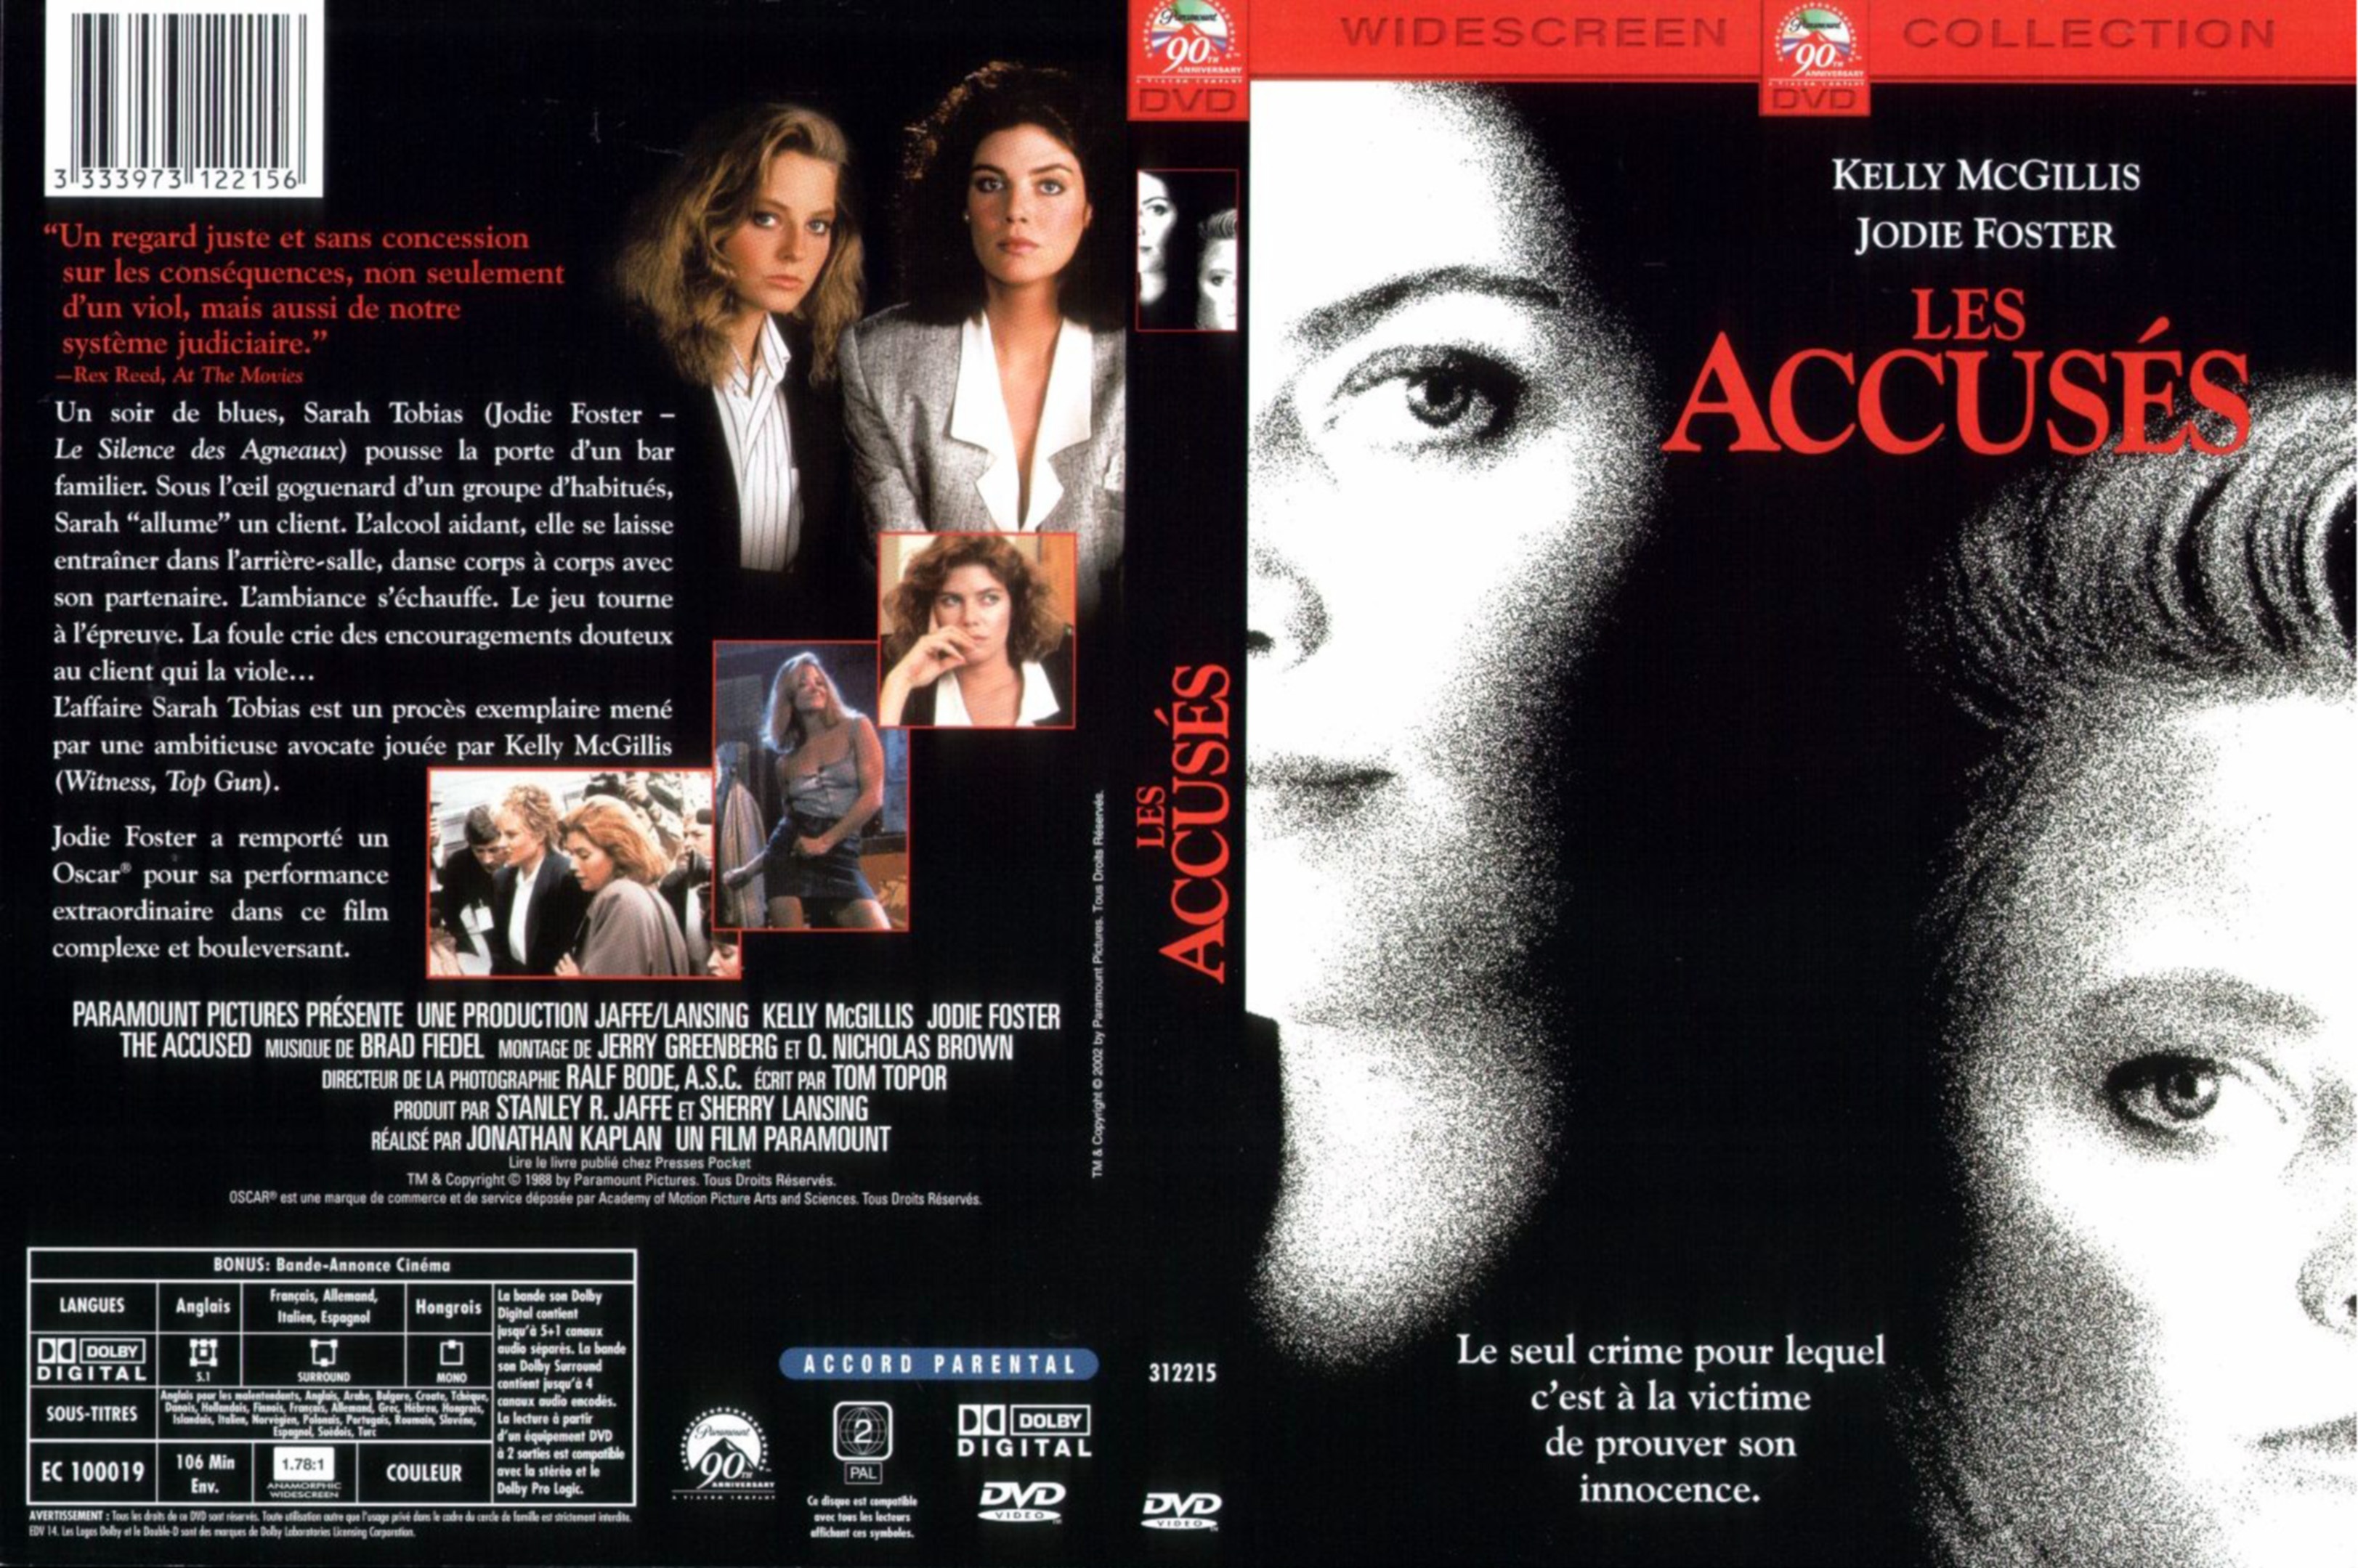 Jaquette DVD Les accuss